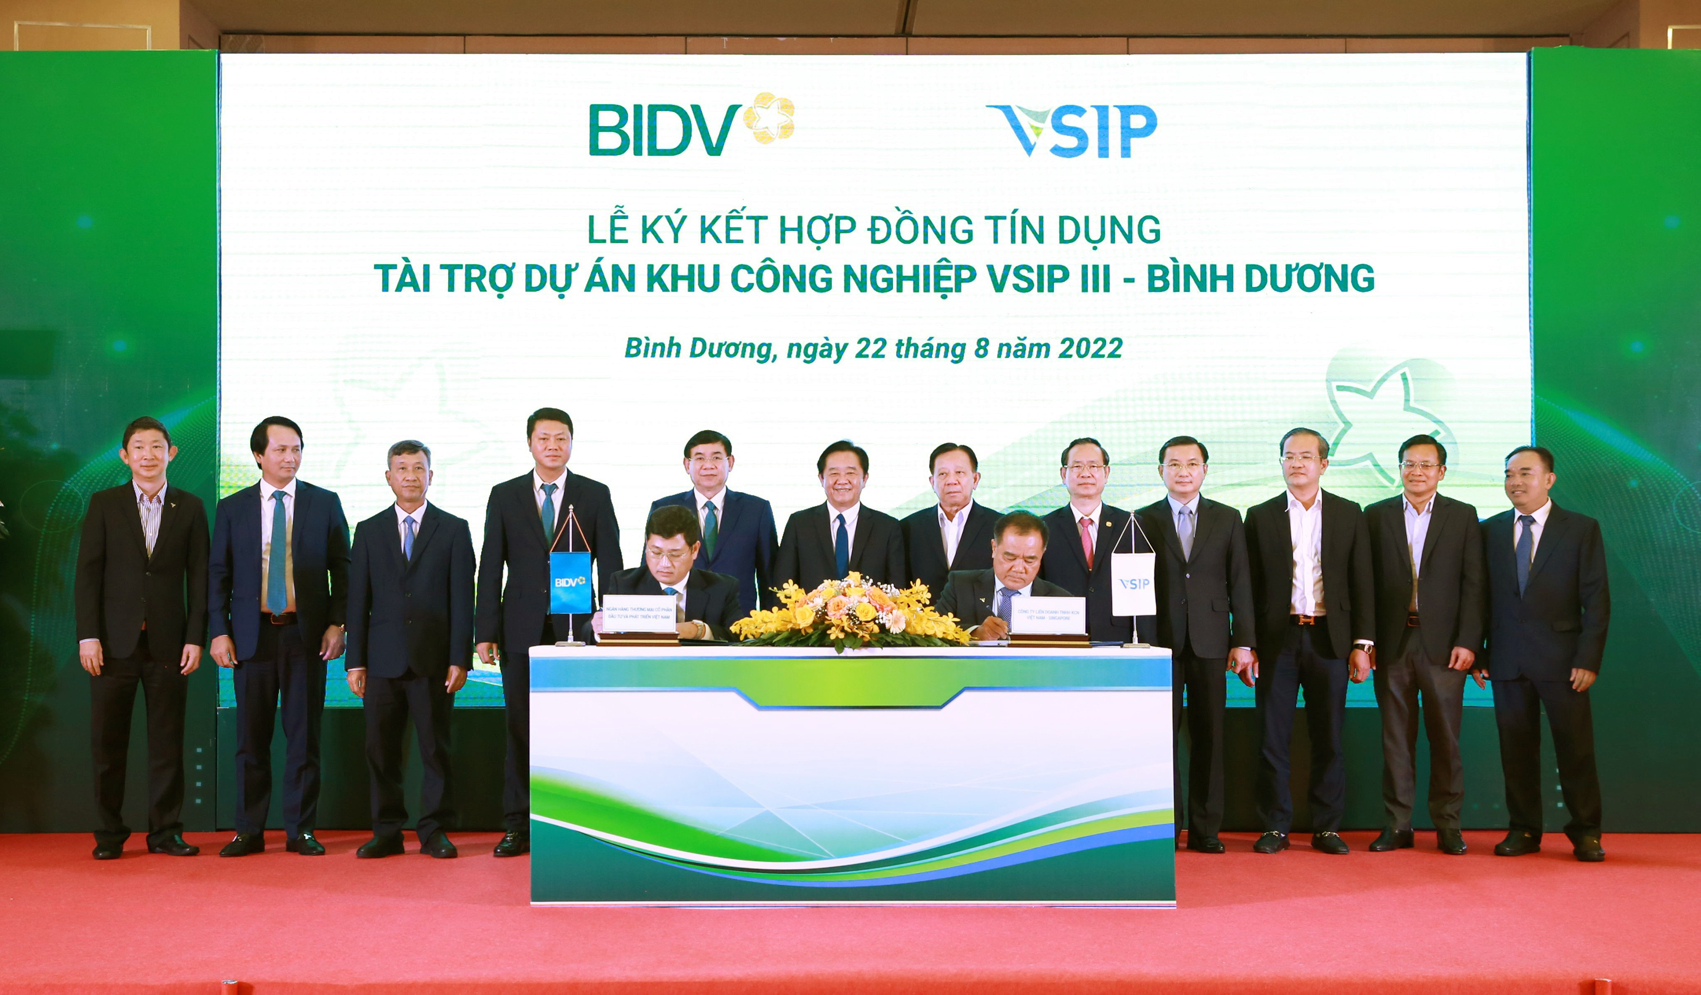 Lễ ký kết hợp đồng tín dụng giữa BIDV và VSIP ngày 22/8 - Ảnh do BIDV cung cấp